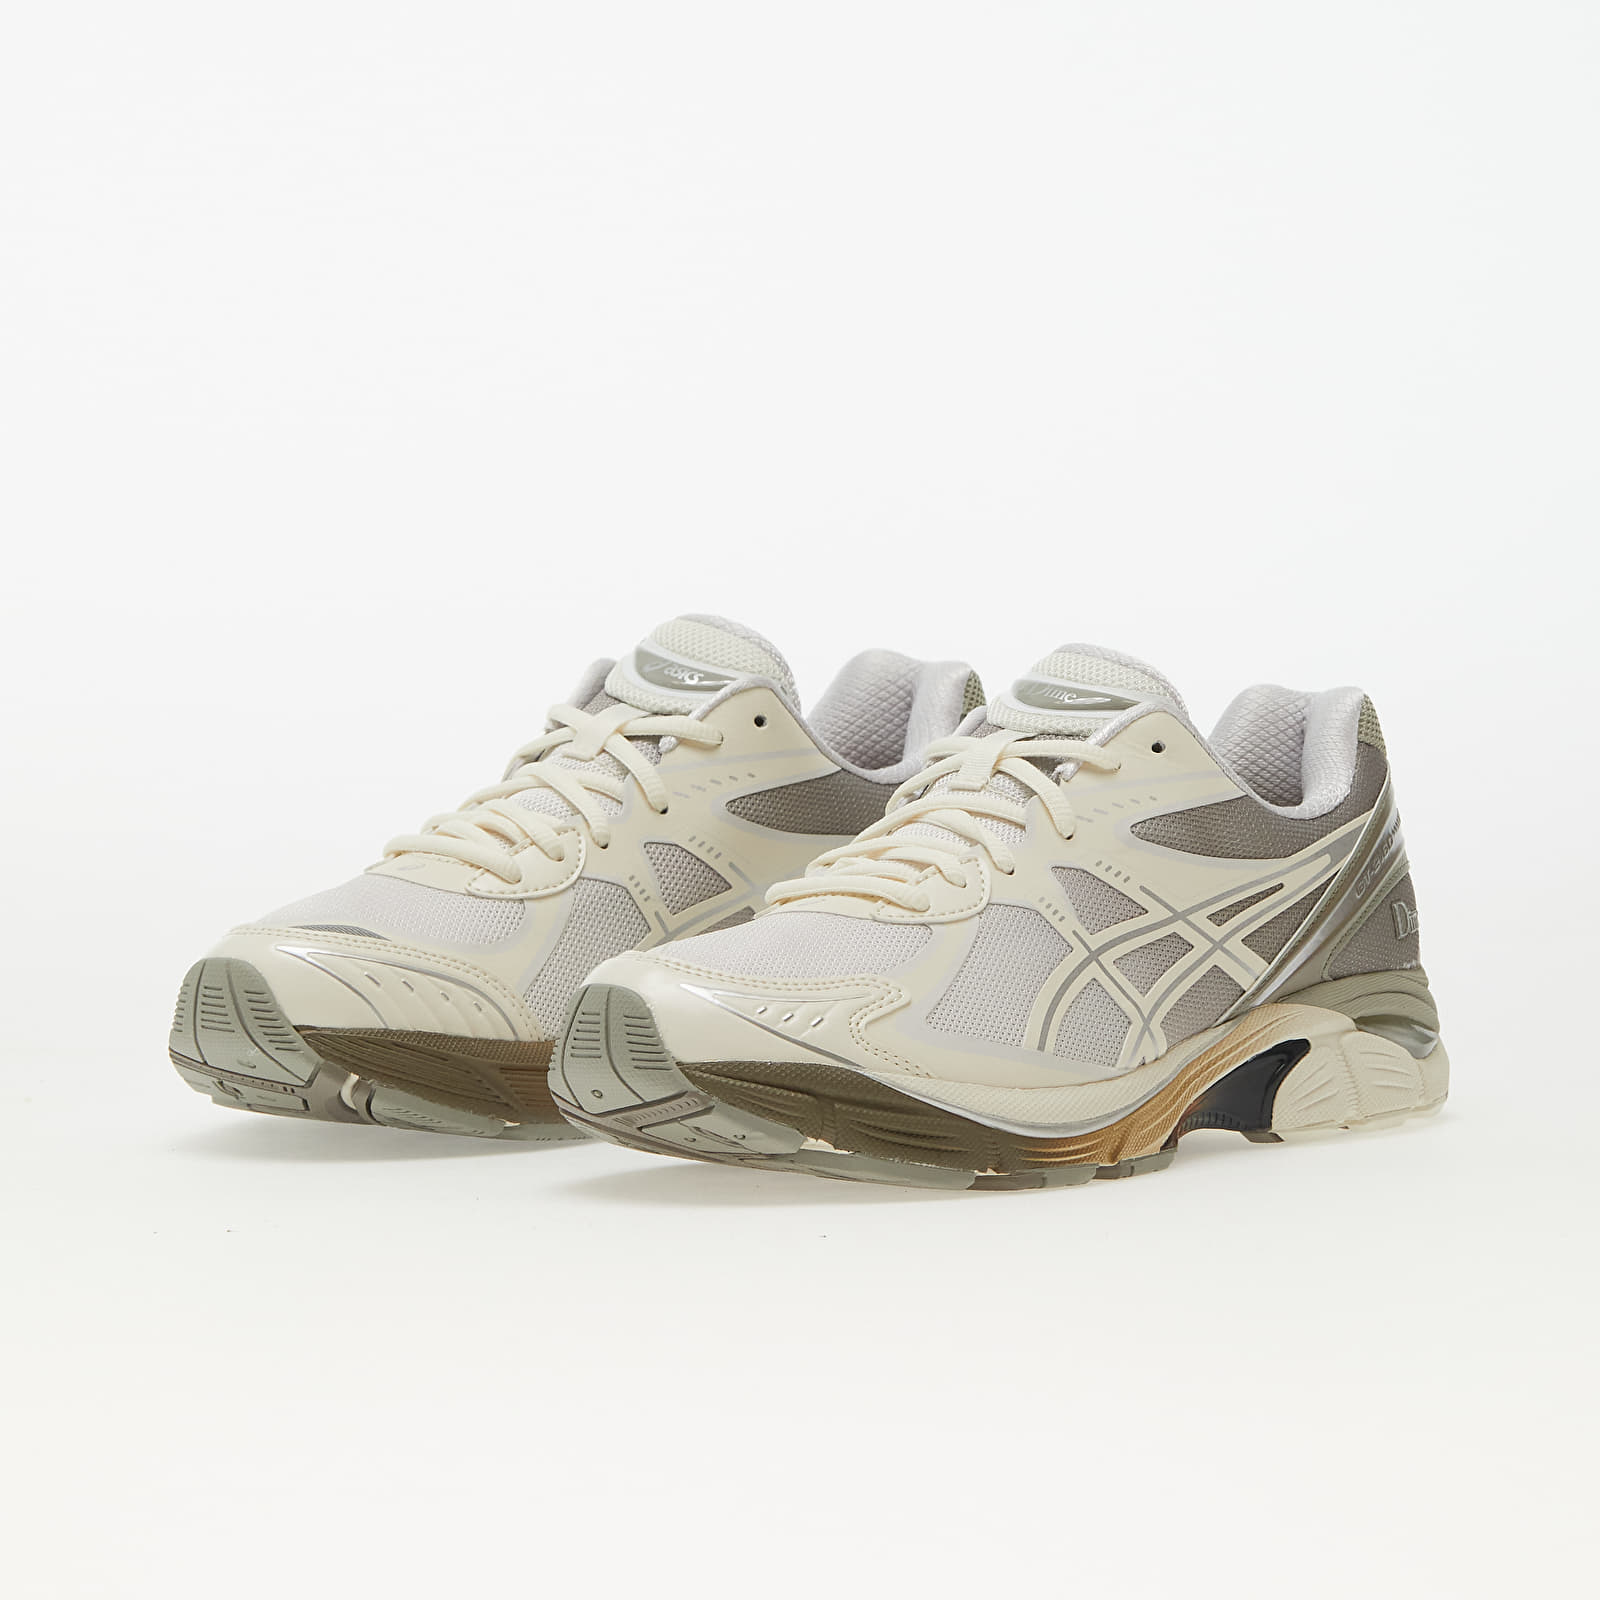 Men's shoes Asics x Dime GT-2160 Arctic Wolf/ London Fog | Footshop